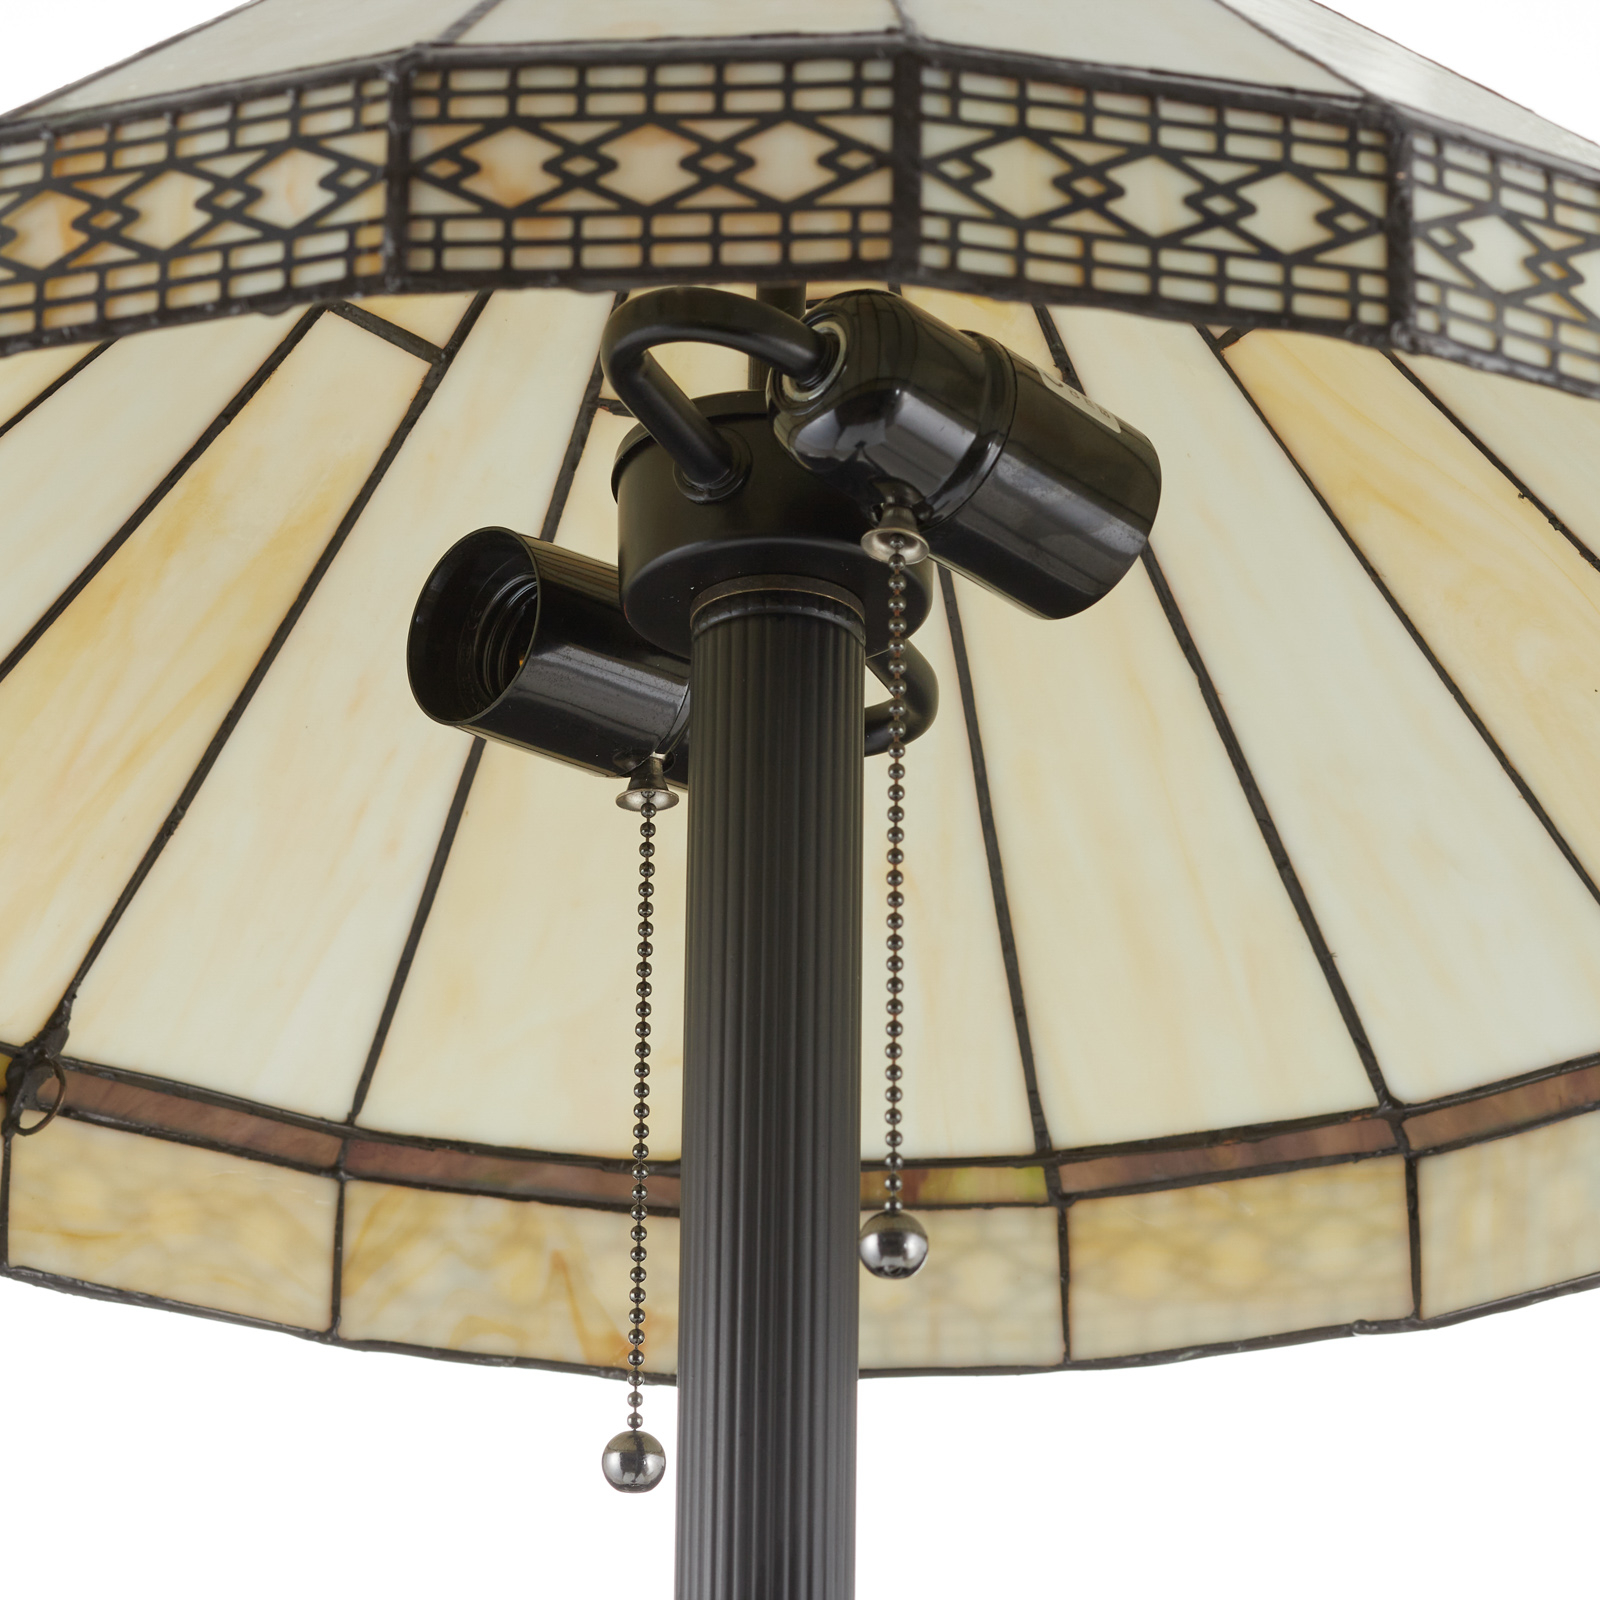 V štýle Tiffany navrhnutá stojaca lampa Bradley